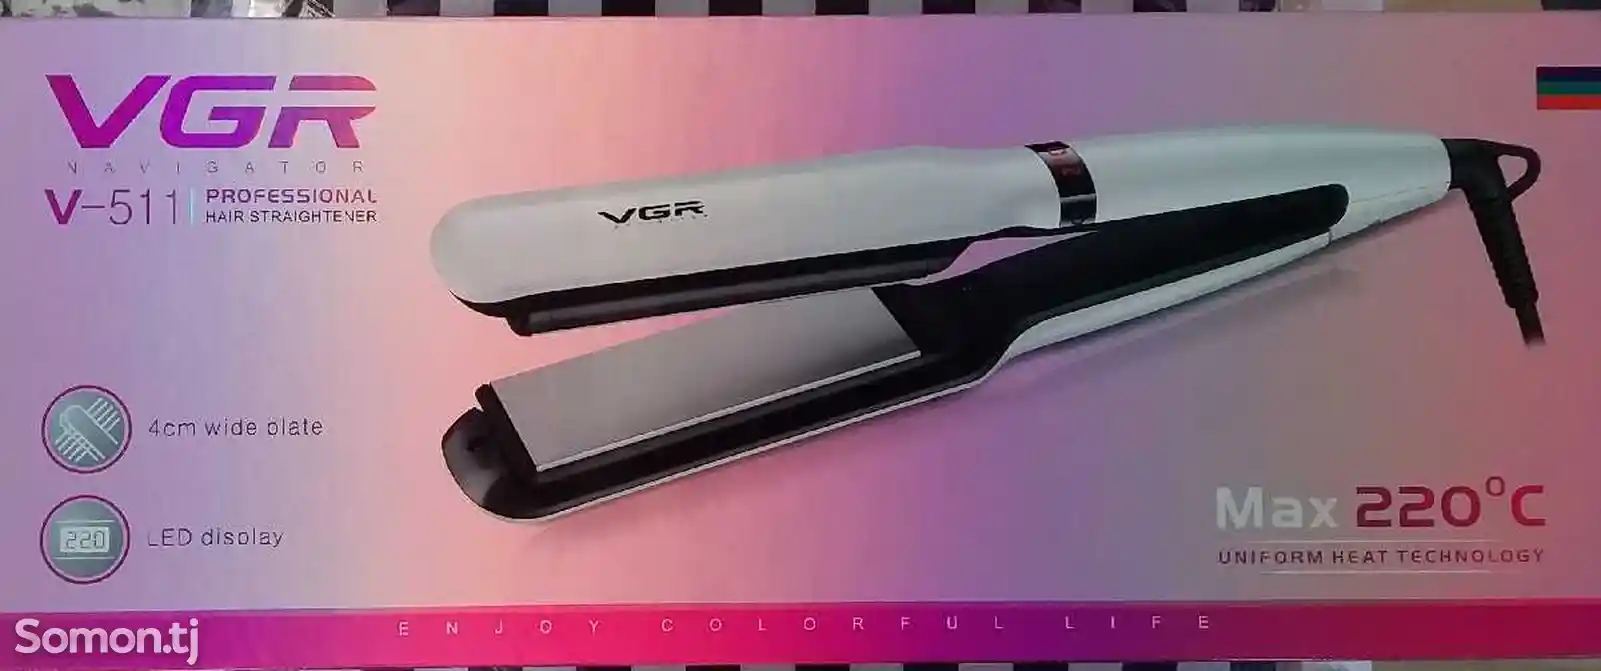 Утюжок для укладки волос V-501 VGR-1